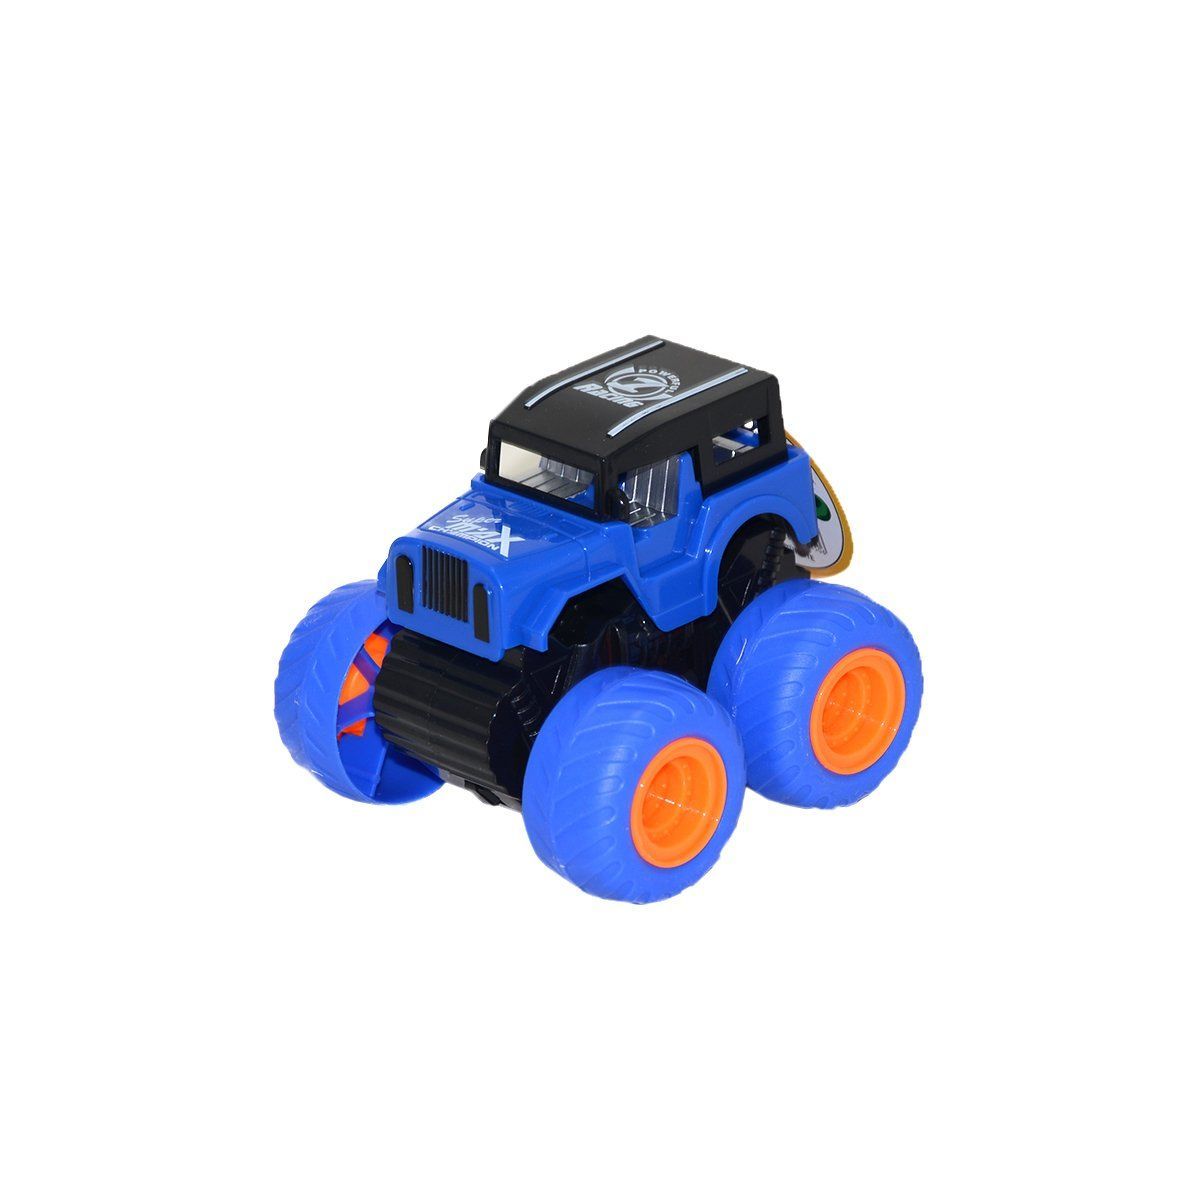 CNL-1113 Sürtmeli Jeep-Can Ali Toys - 1 adet stokta olan gönderilir